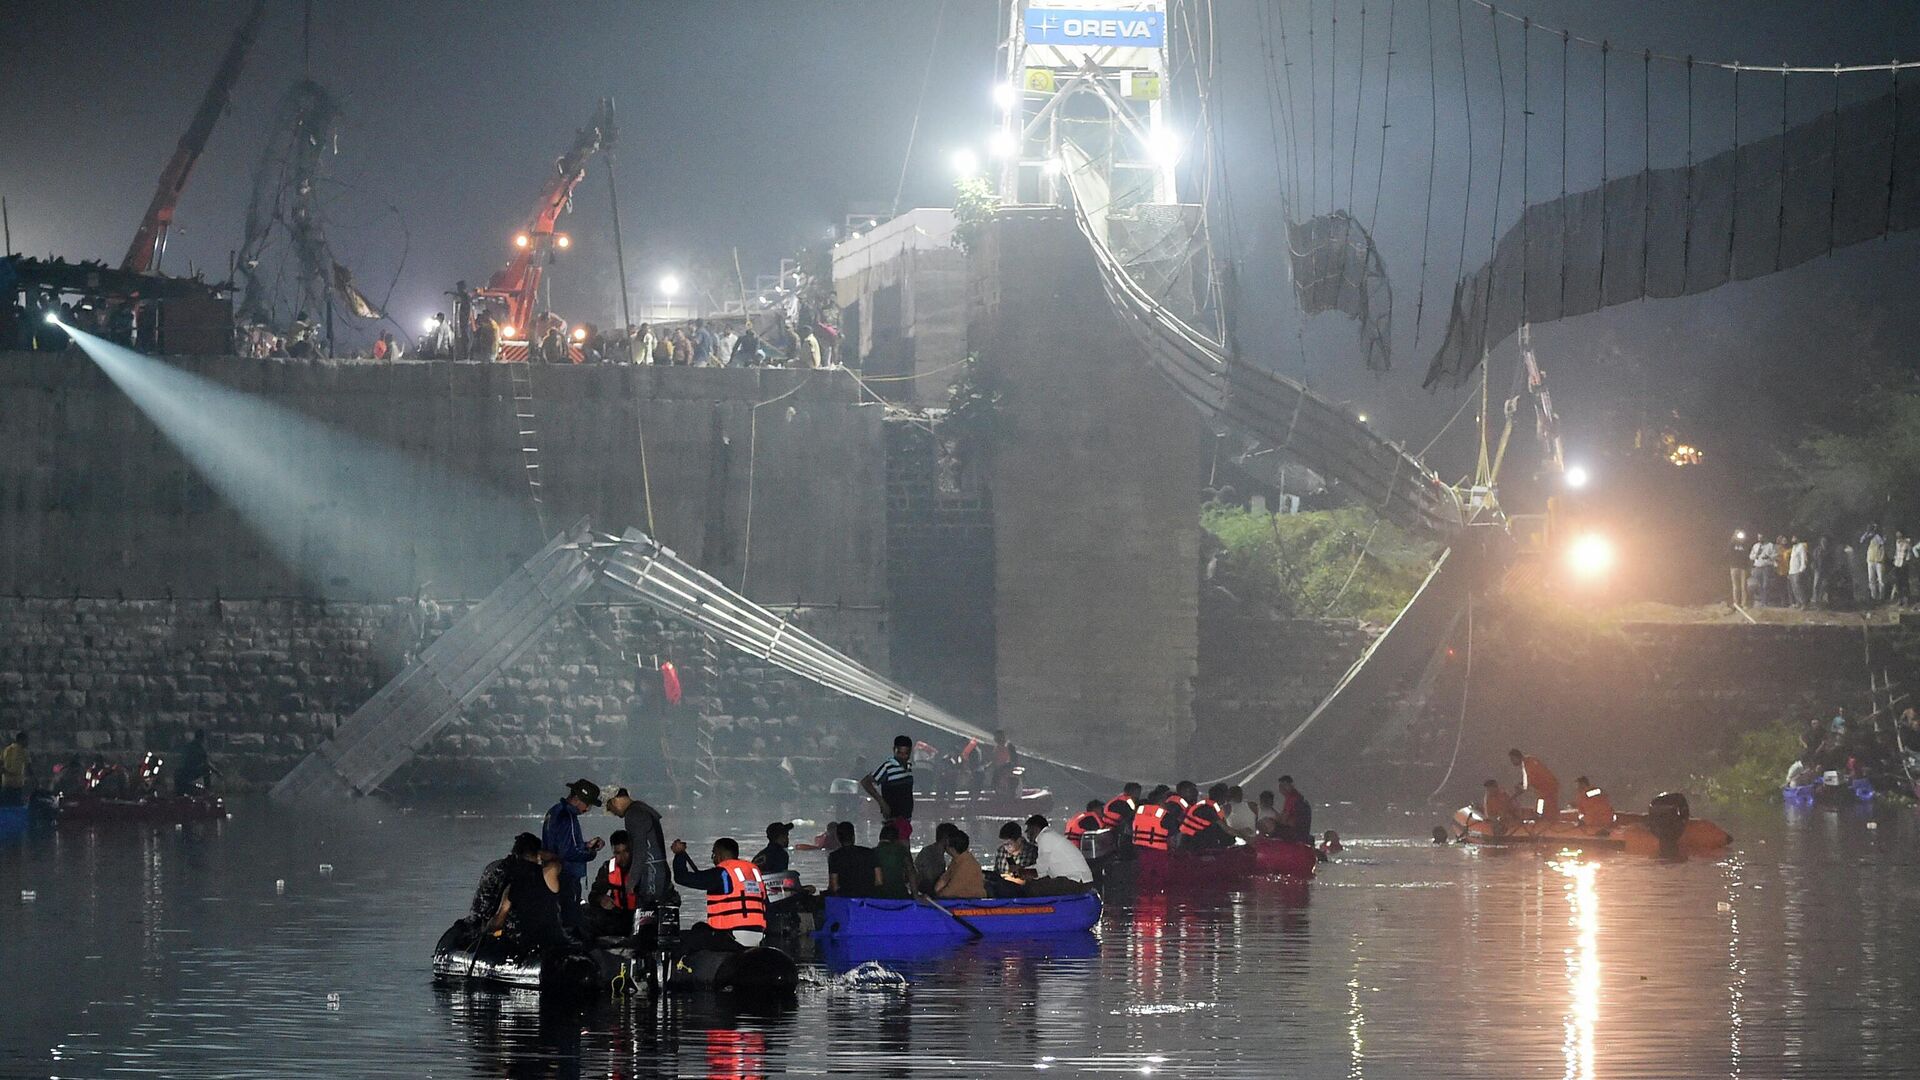 Спасатели проводят поисковые работы на месте обрушения моста в индийском штате Гуджарат. 31 октября 2022 года - Sputnik Кыргызстан, 1920, 31.10.2022